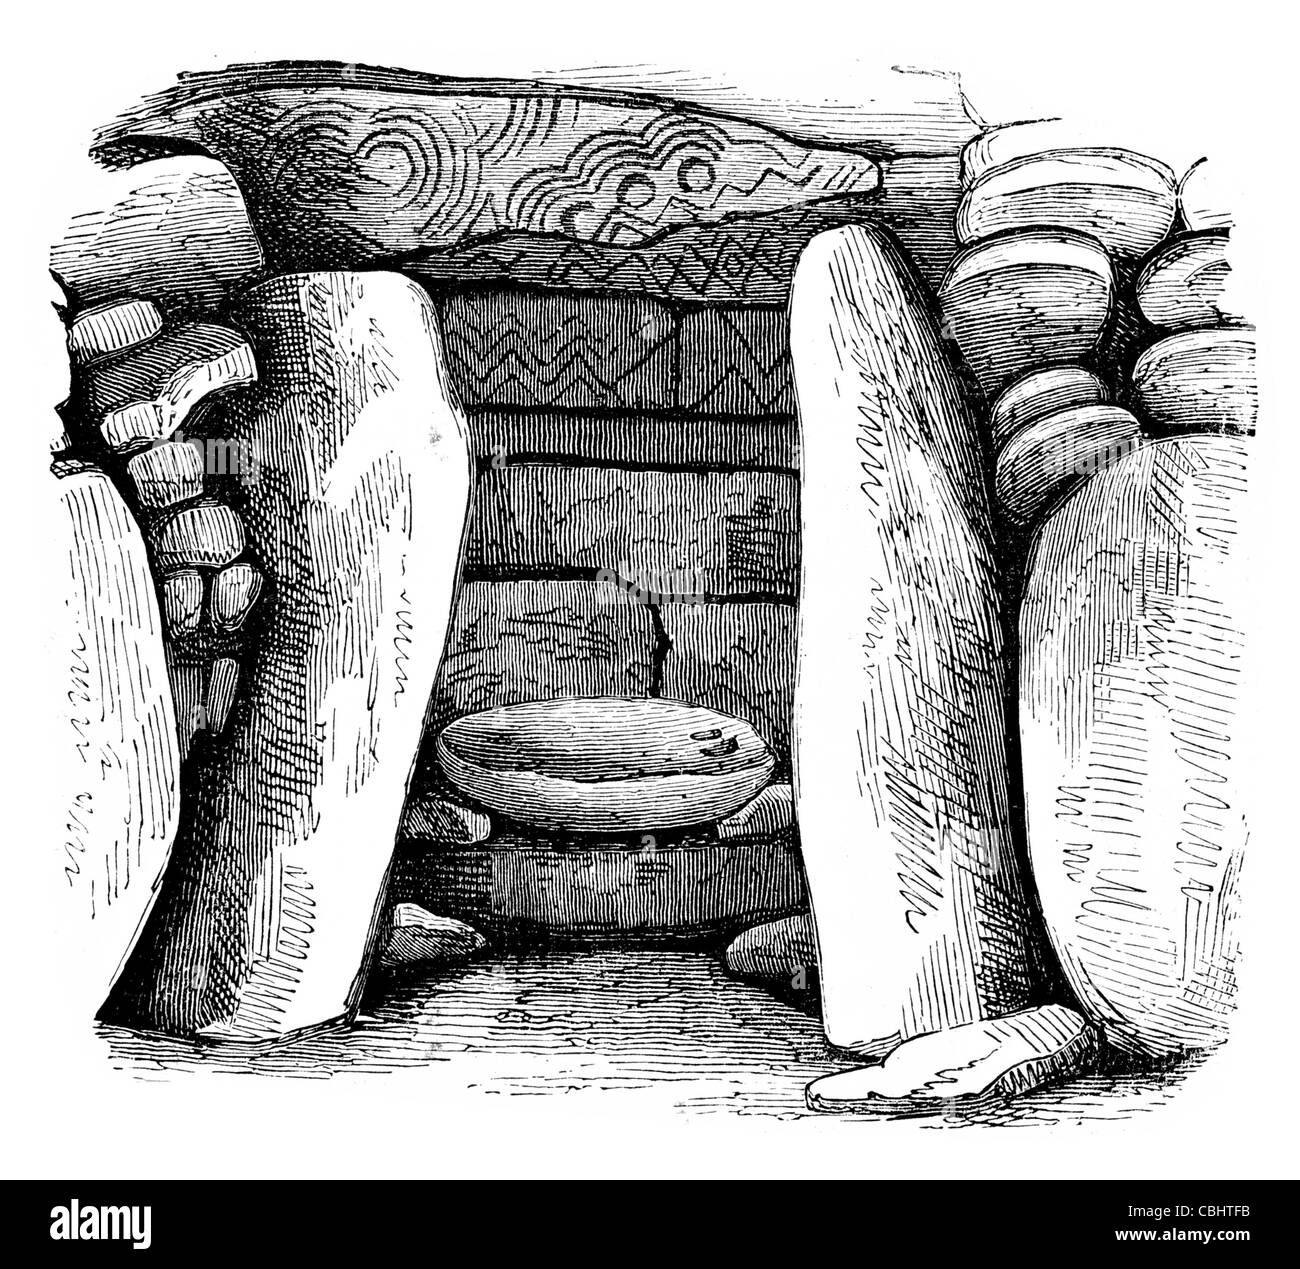 Chambre sépulcrale monument préhistorique Newgrange comté de Meath Irlande du solstice d'hiver néolithique Site du patrimoine mondial de l'UNESCO Banque D'Images